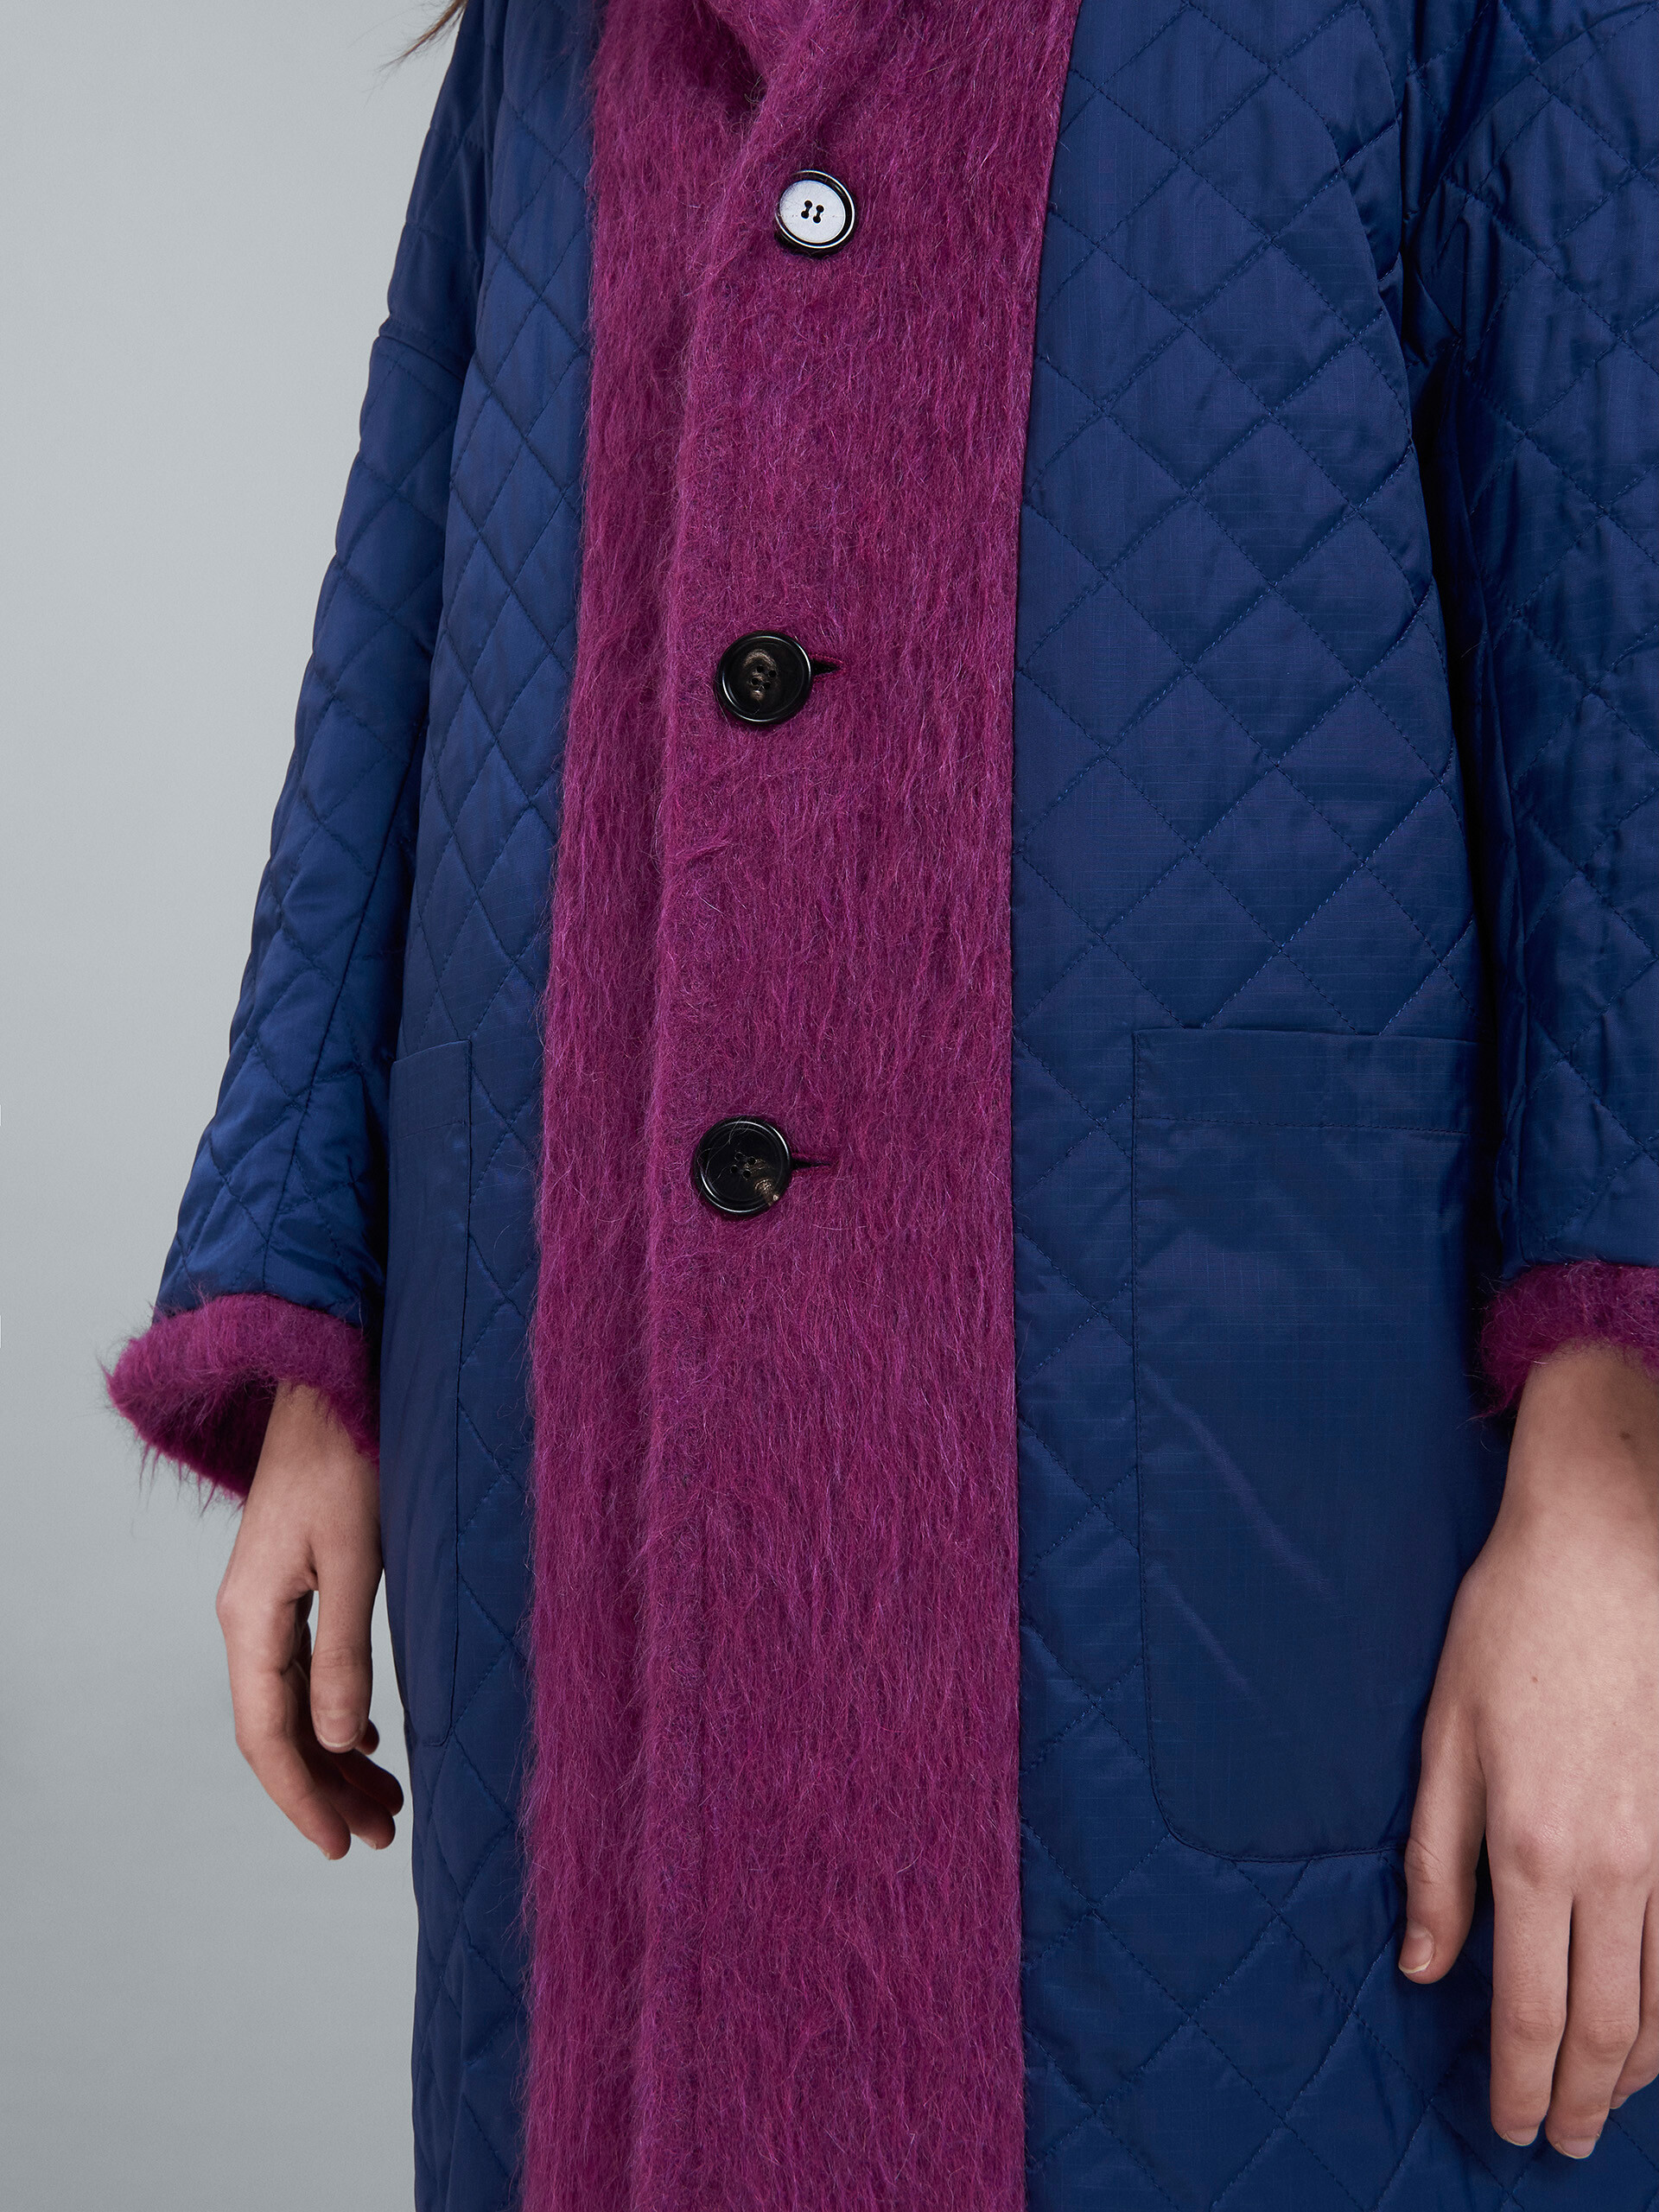 Brushed wool coat - Coat - Image 5